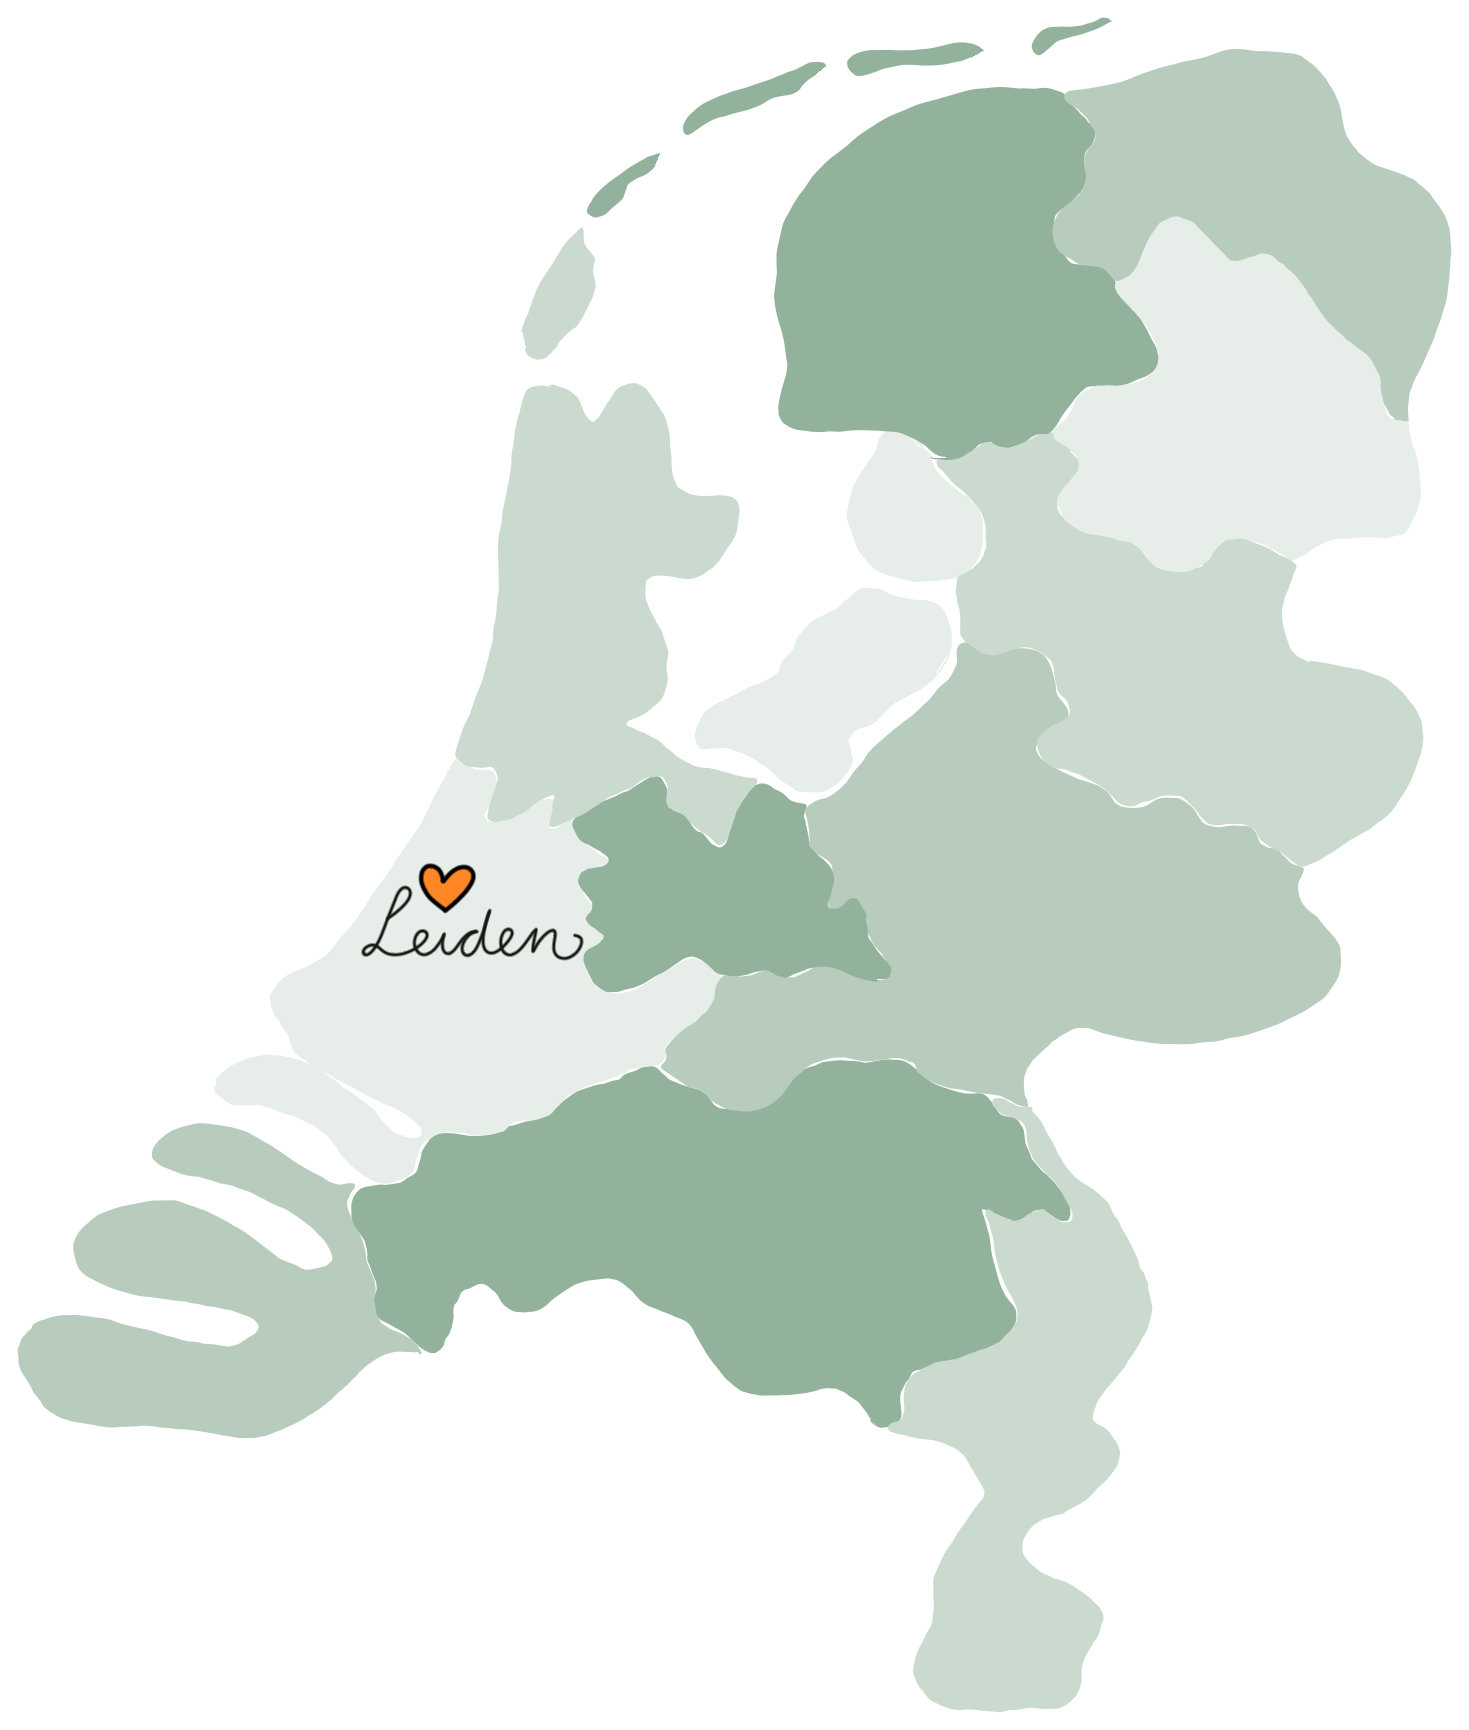 ISC23NL Leiden